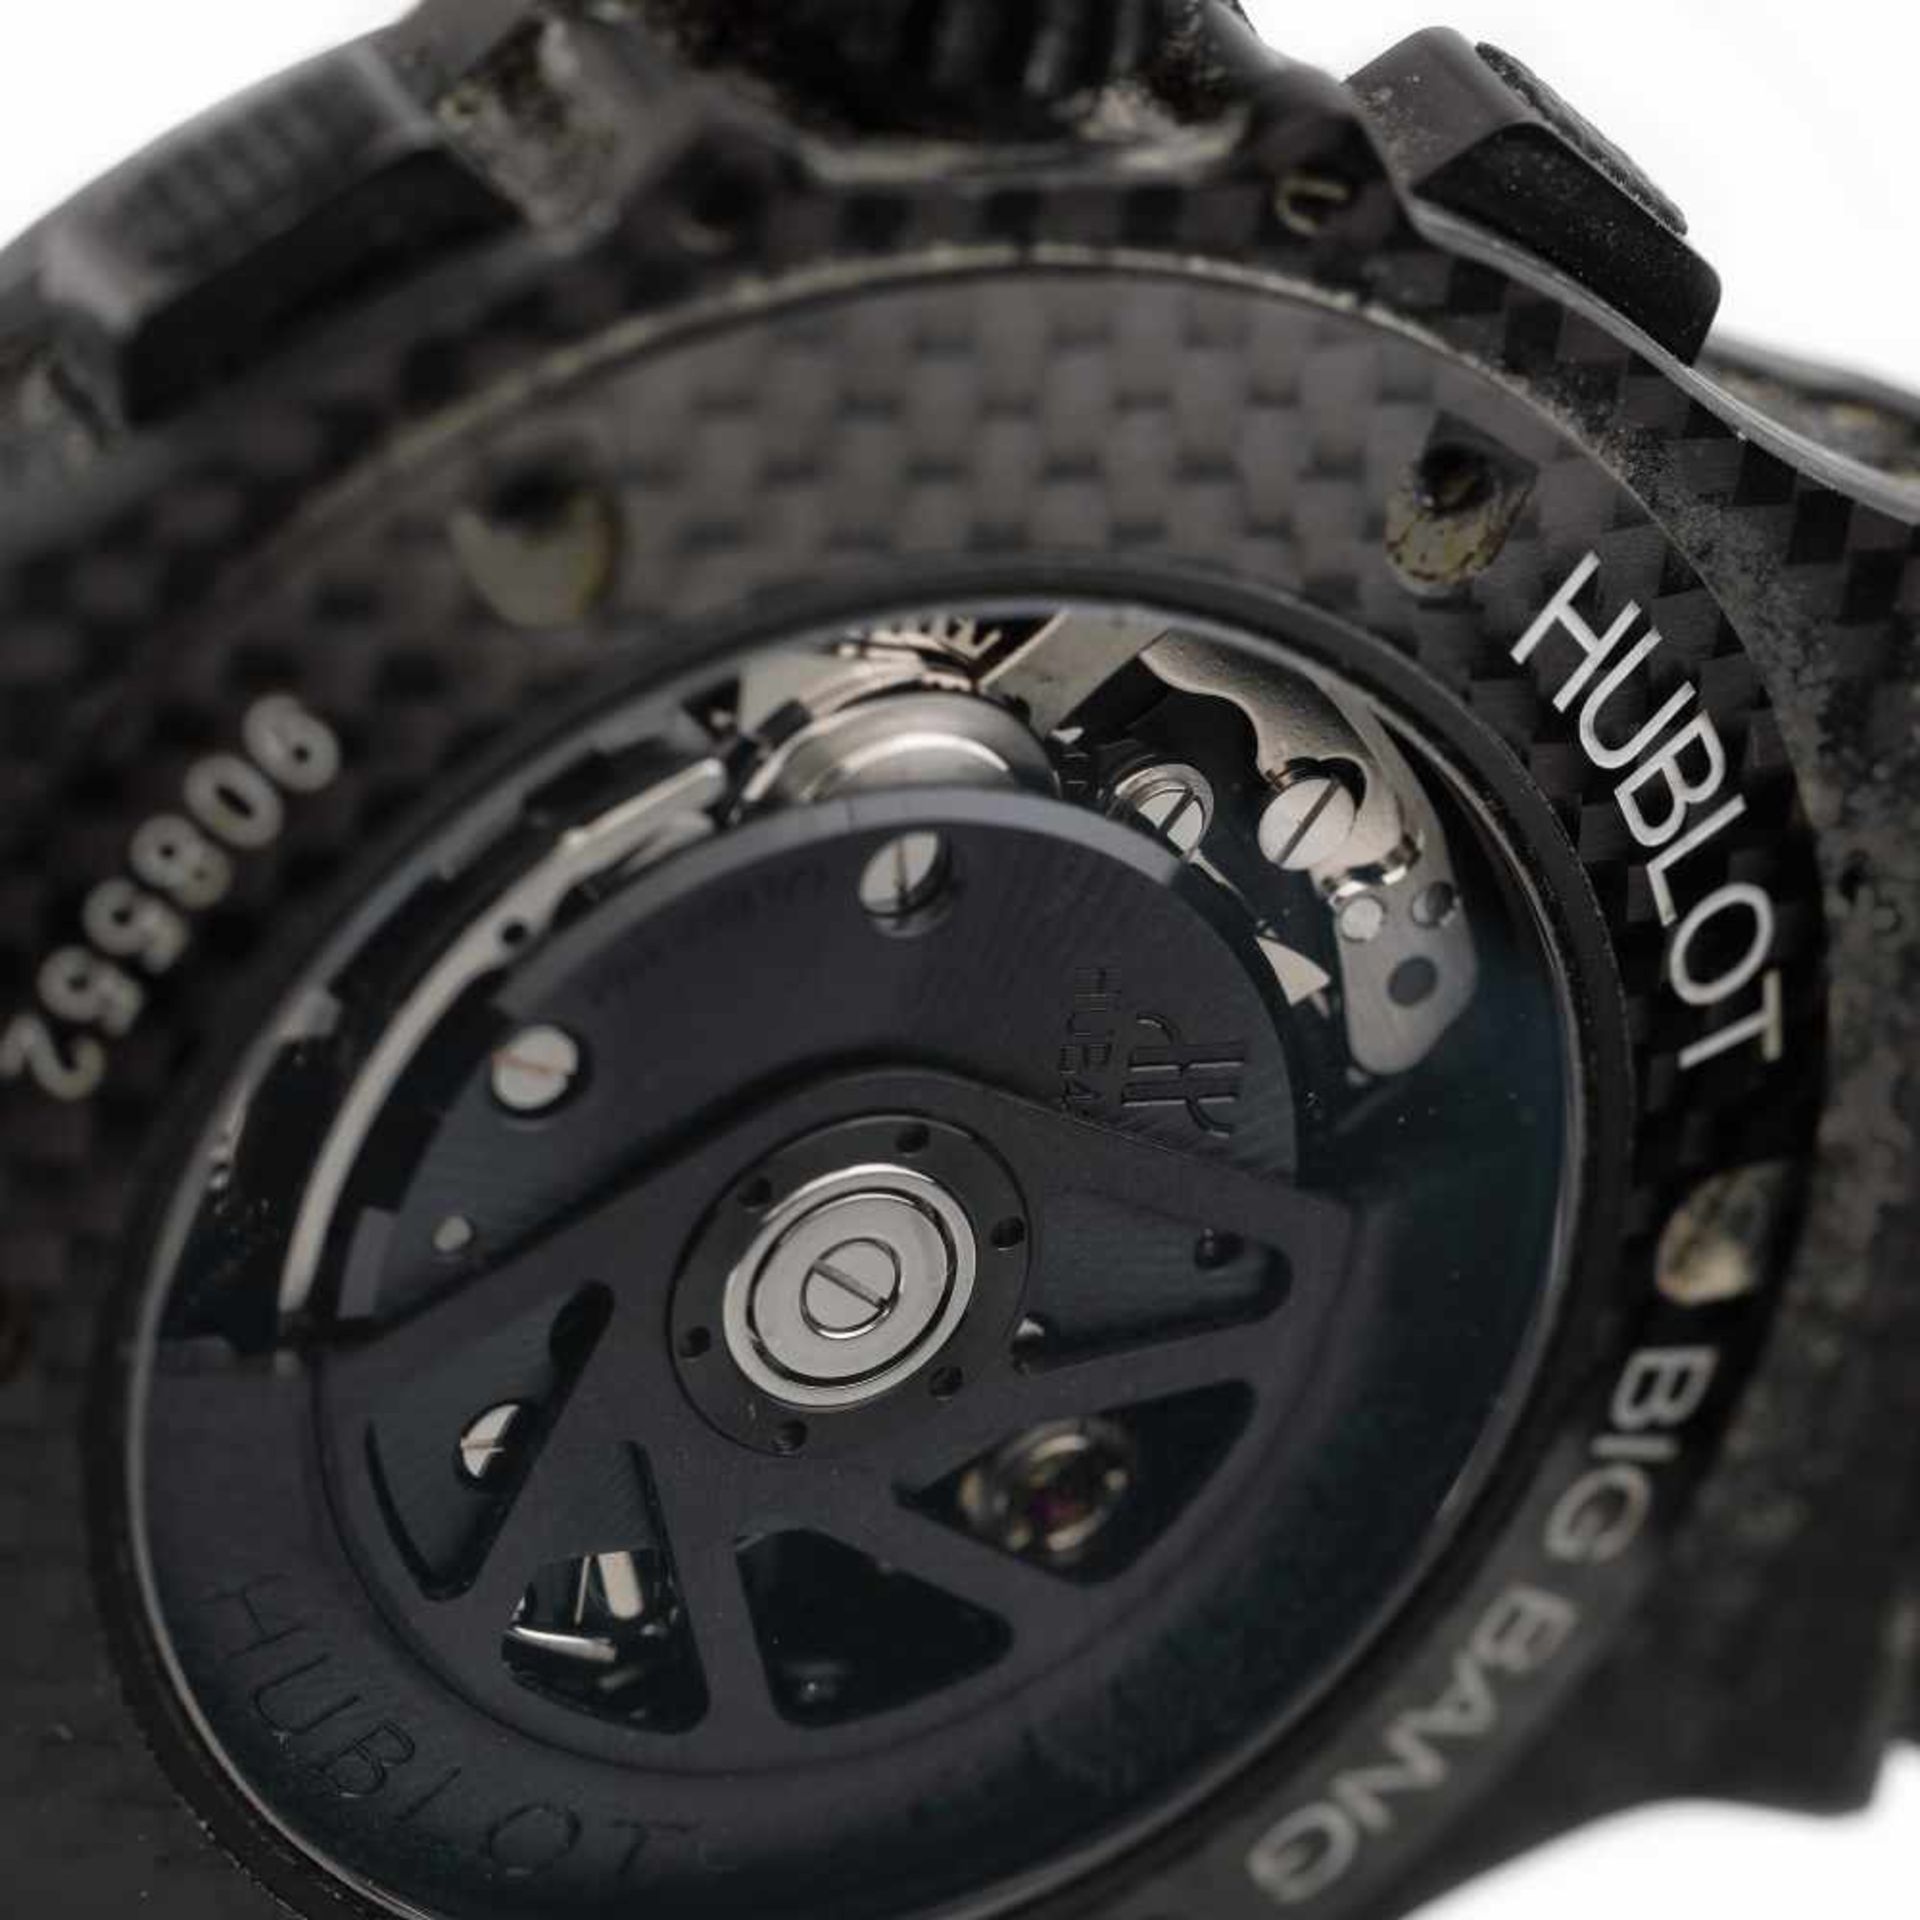 Hublot Big Bang wristwatch, carbon, menHublot Big Bang wristwatch, carbon, men, reference 301.Q - Image 3 of 3